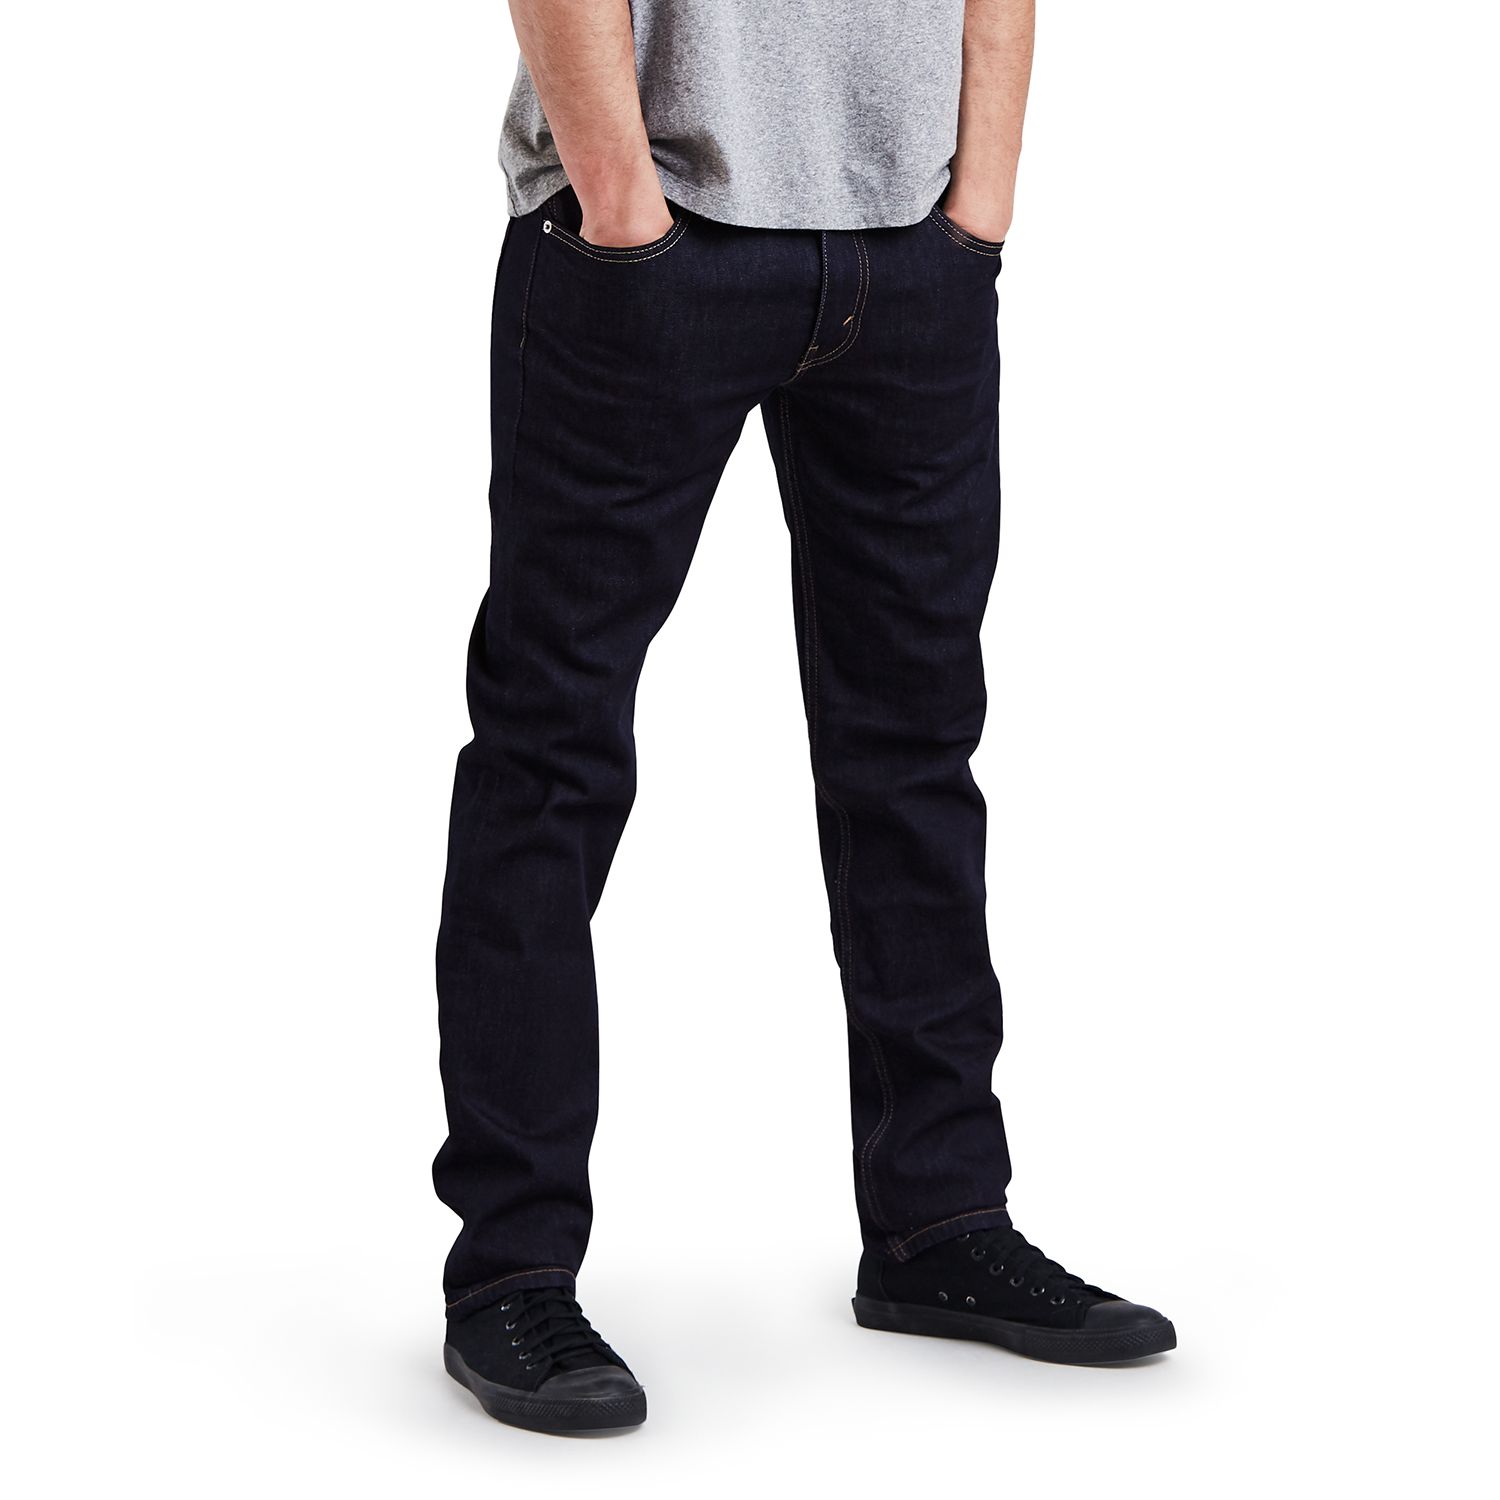 levi's slim men's black jeans